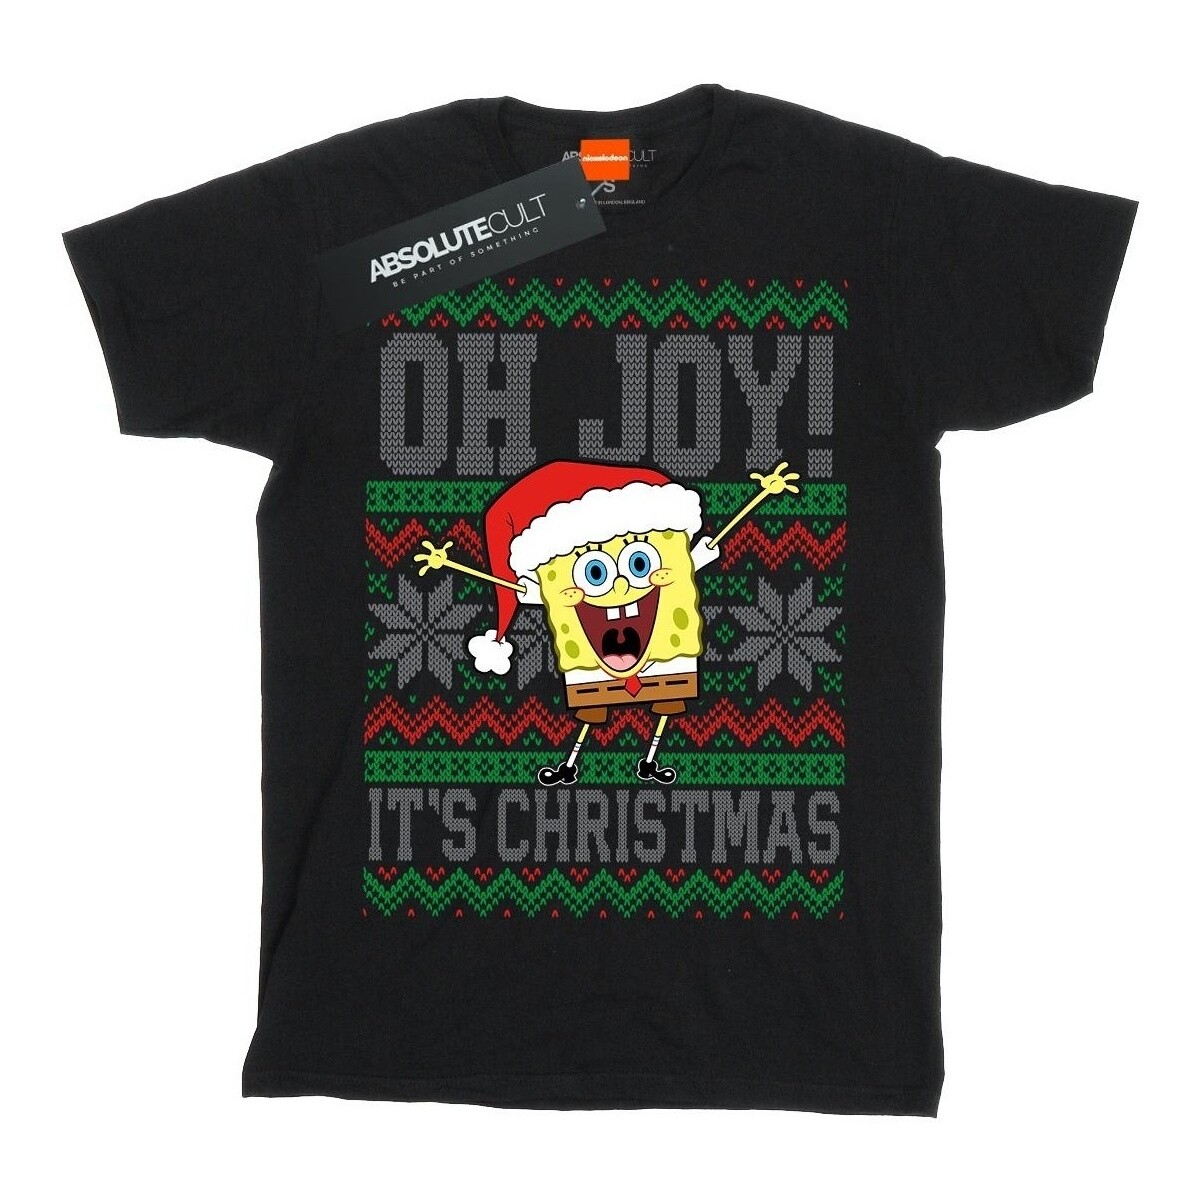 Vêtements Femme T-shirts manches longues Spongebob Squarepants Oh Joy! Christmas Fair Isle Noir